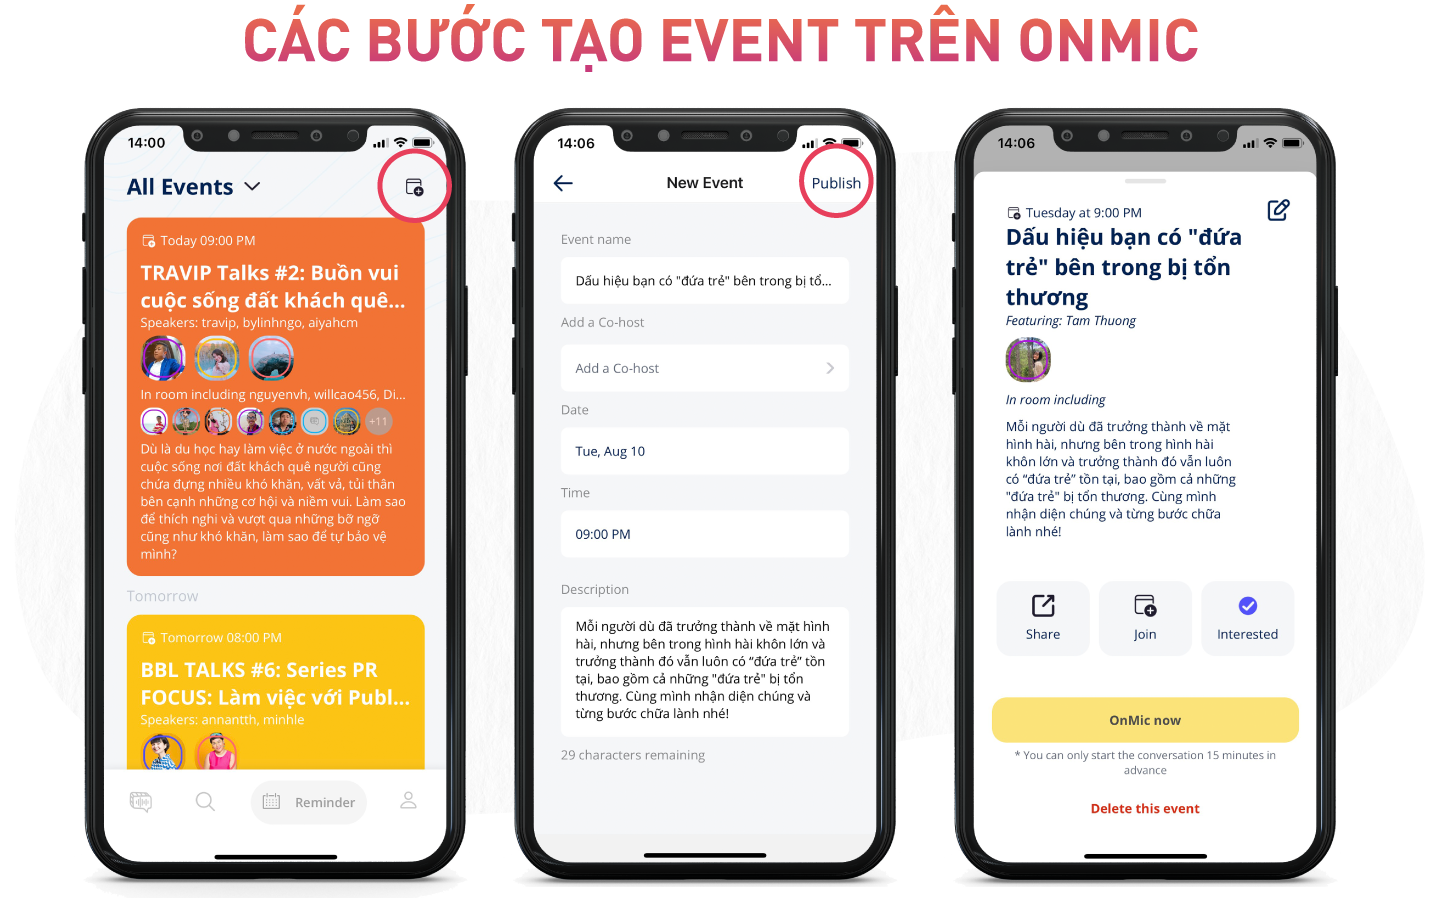 OnMic - Nền tảng audio mở ra cơ hội để thương hiệu chinh phục người dùng bằng âm thanh | Advertising Vietnam